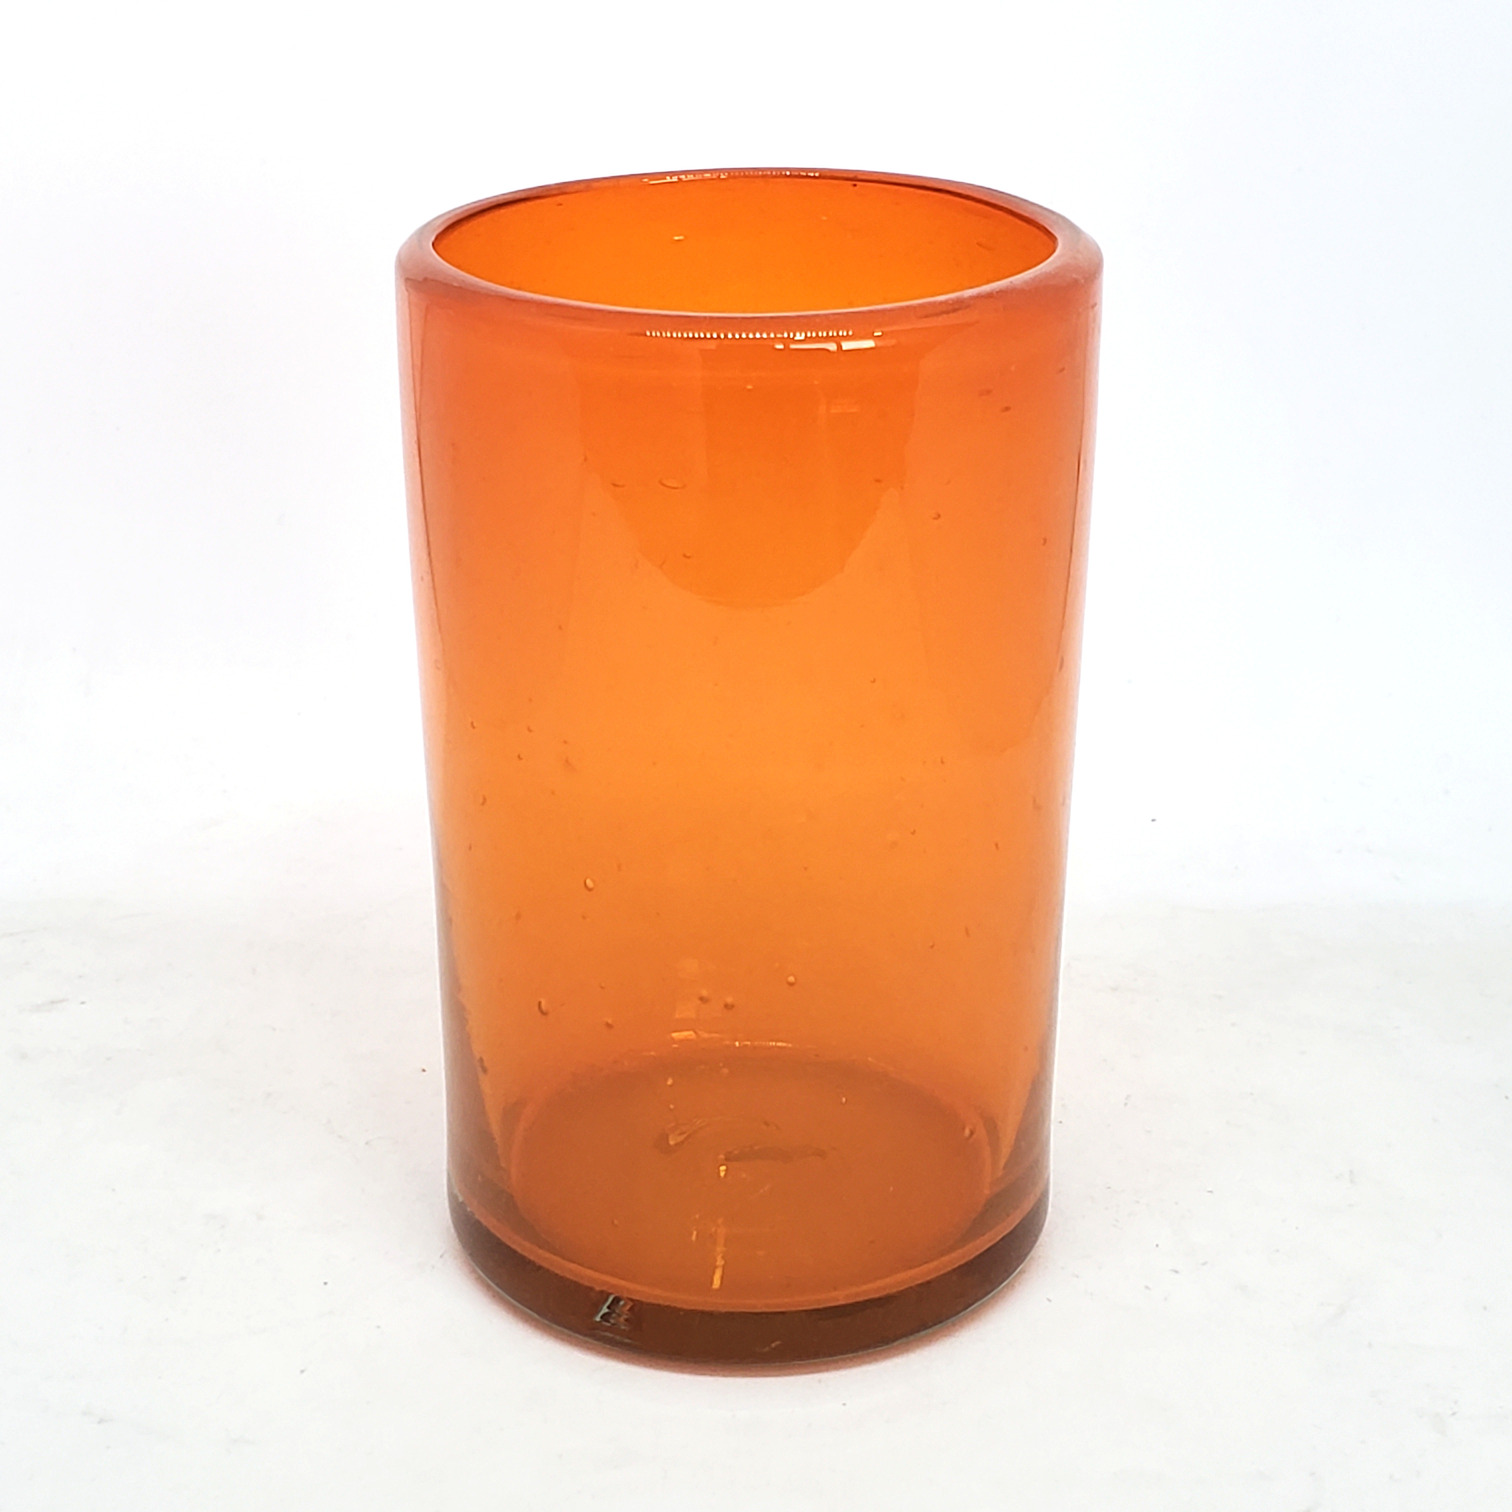 Colores Solidos al Mayoreo / vasos grandes color naranja / Éstos artesanales vasos le darán un toque clásico a su bebida favorita.